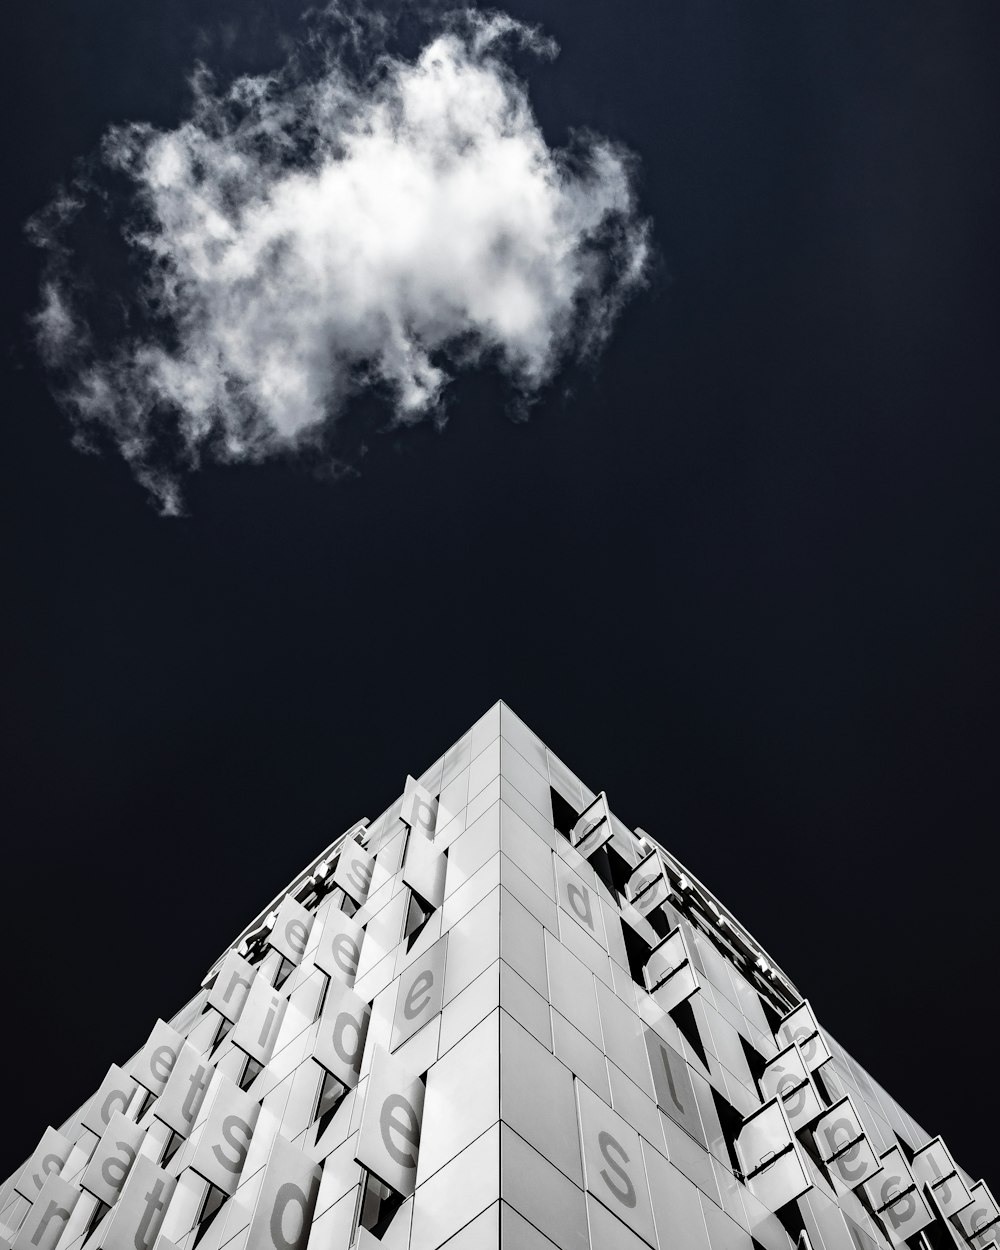 흐린 하늘 아래 콘크리트 건물의 그레이스케일 사진